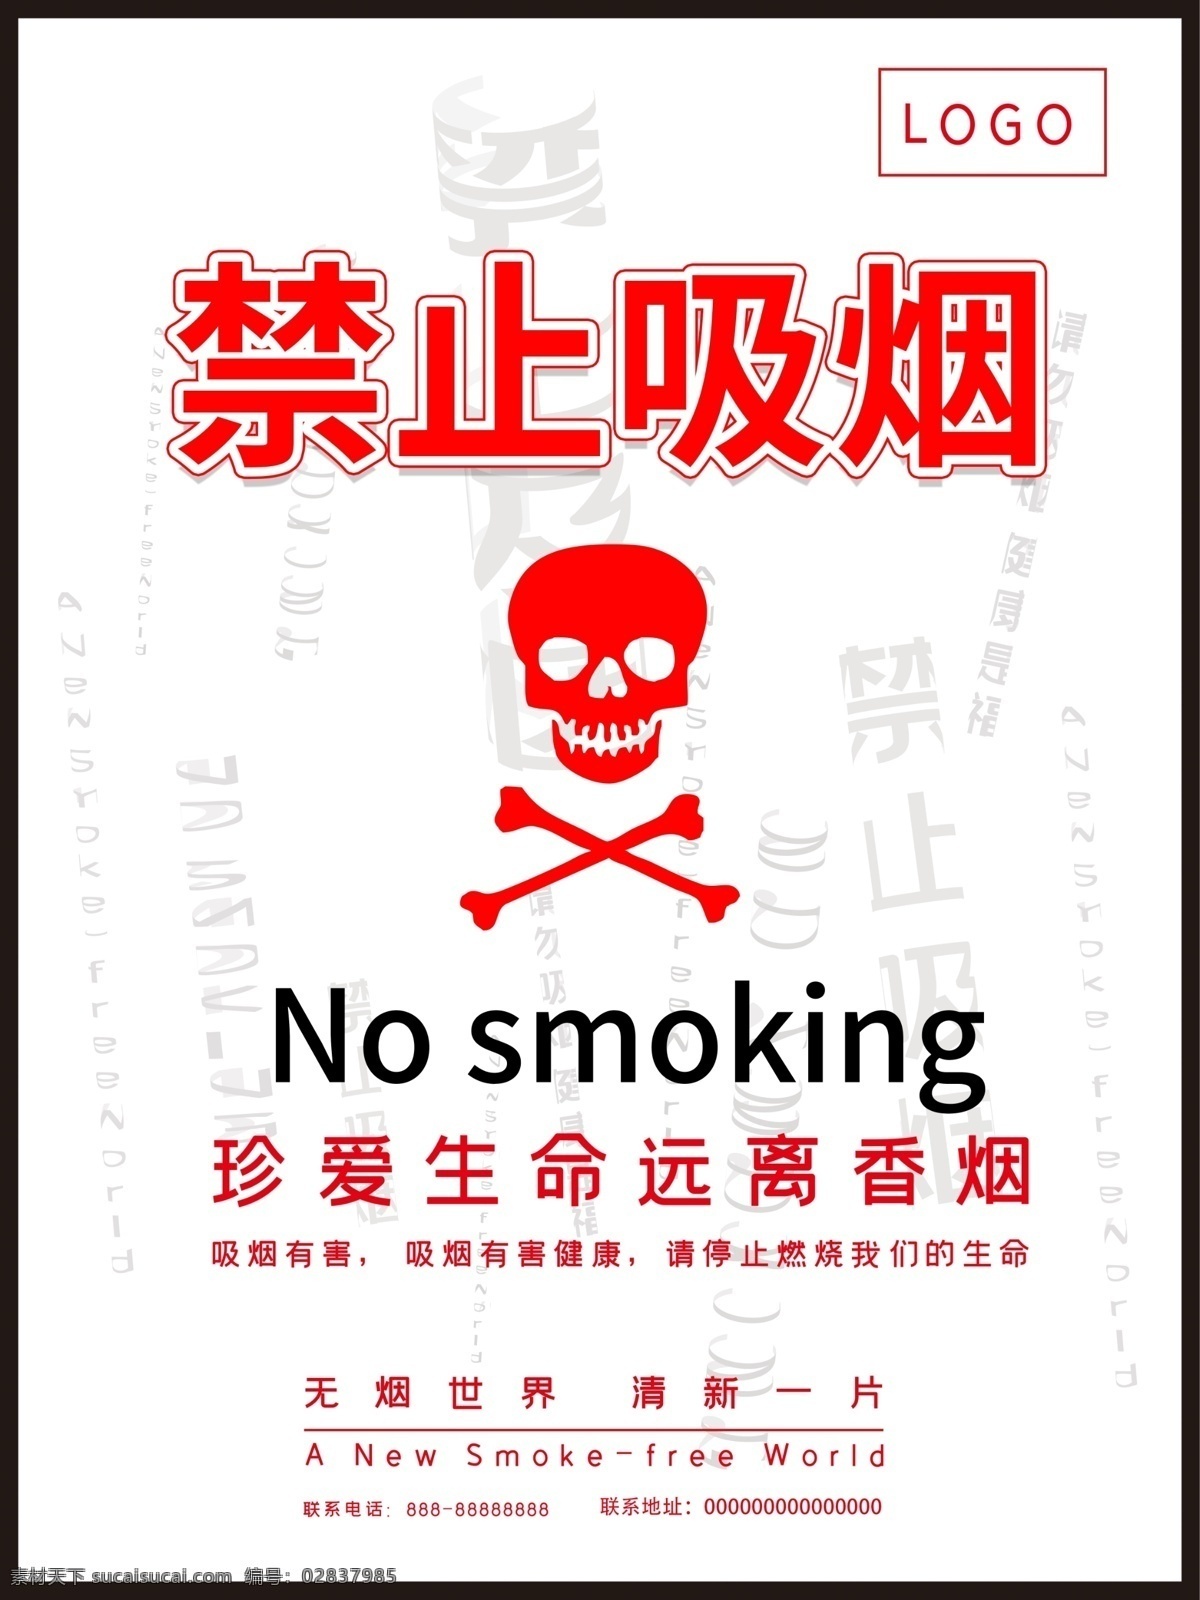 禁止吸烟标志 禁止吸烟门牌 禁止吸烟样式 禁止吸烟模版 美食面包 蛋糕 水果